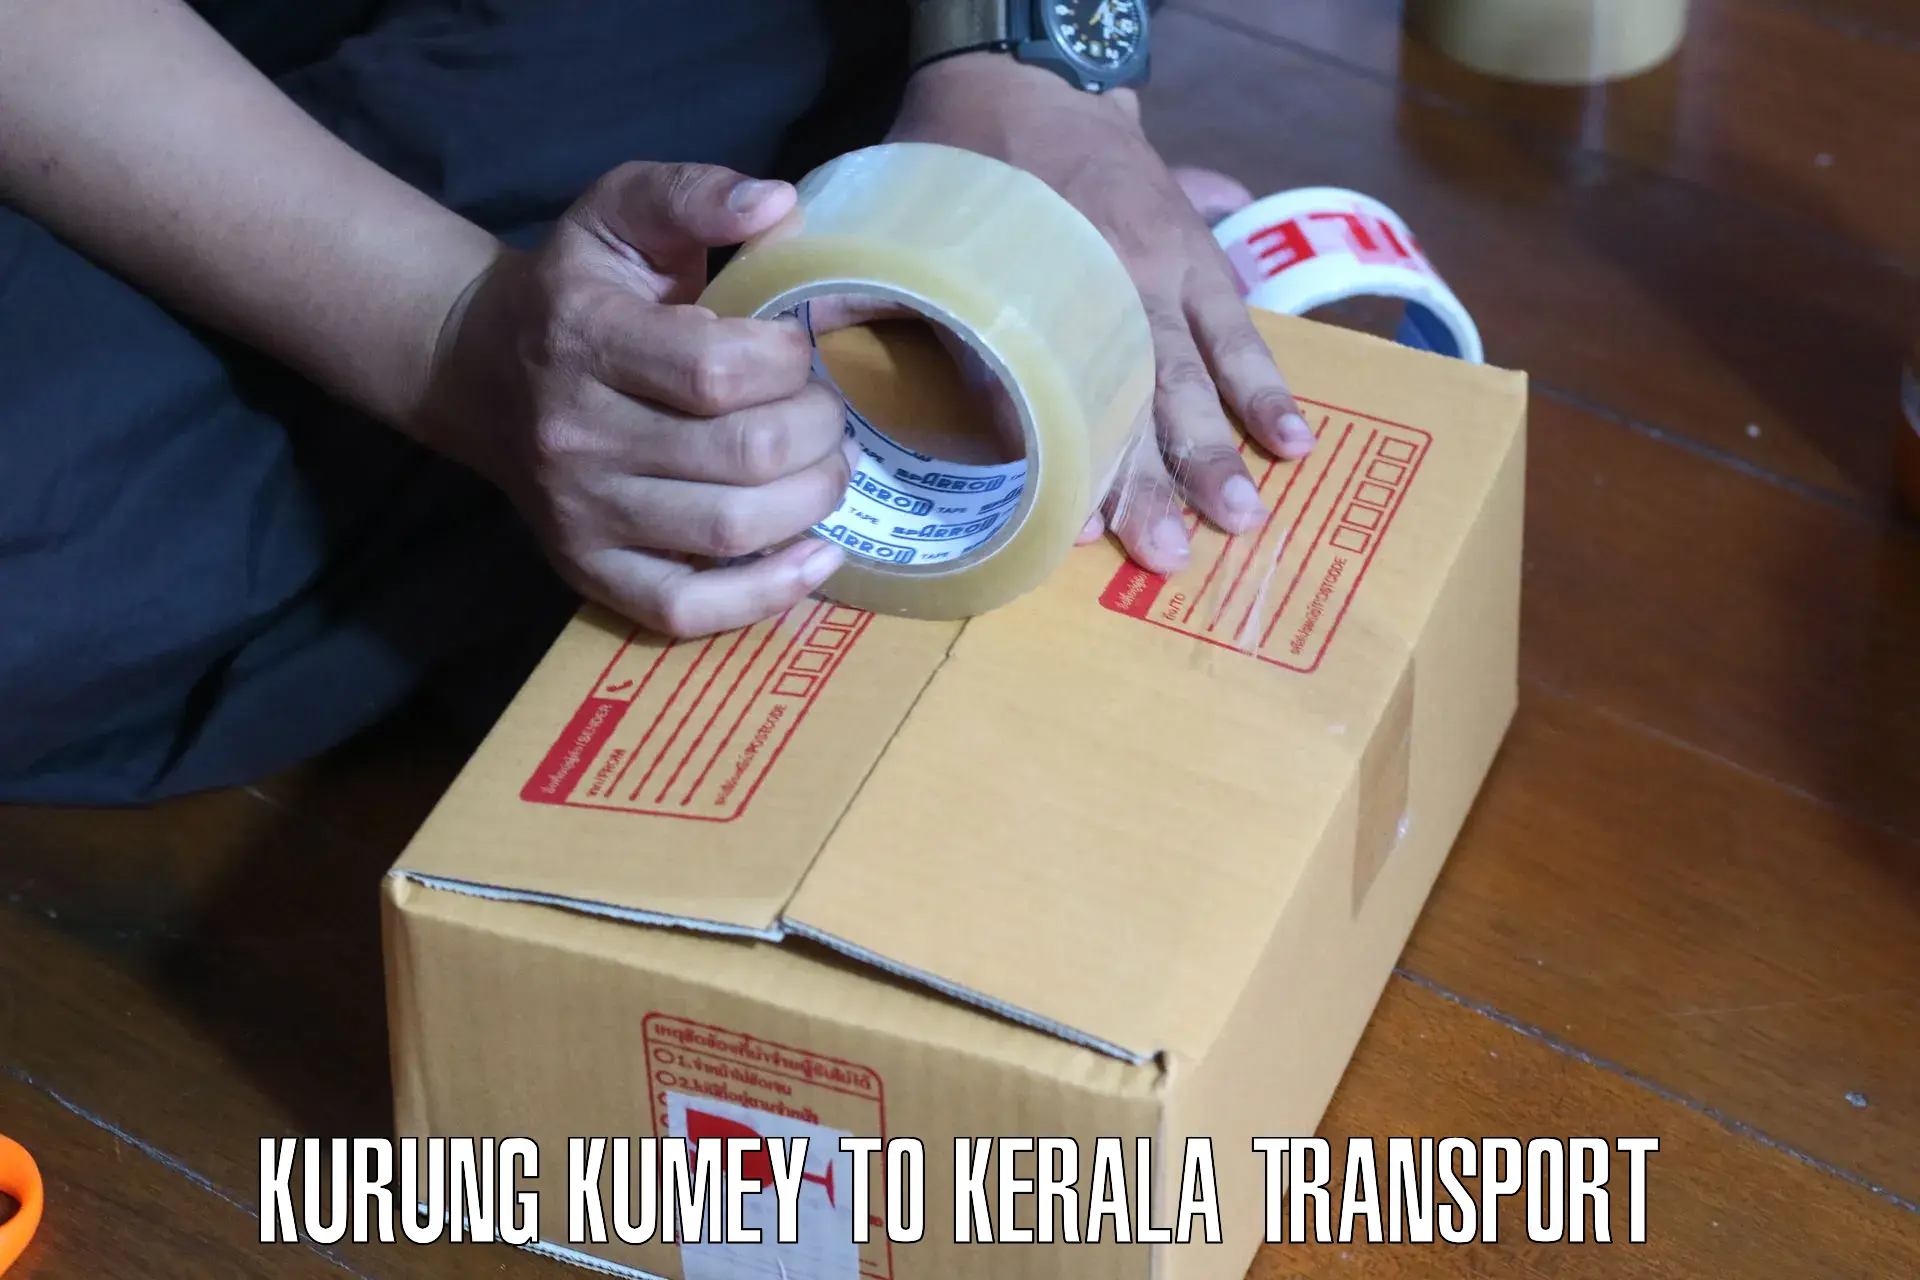 Domestic goods transportation services Kurung Kumey to Muvattupuzha